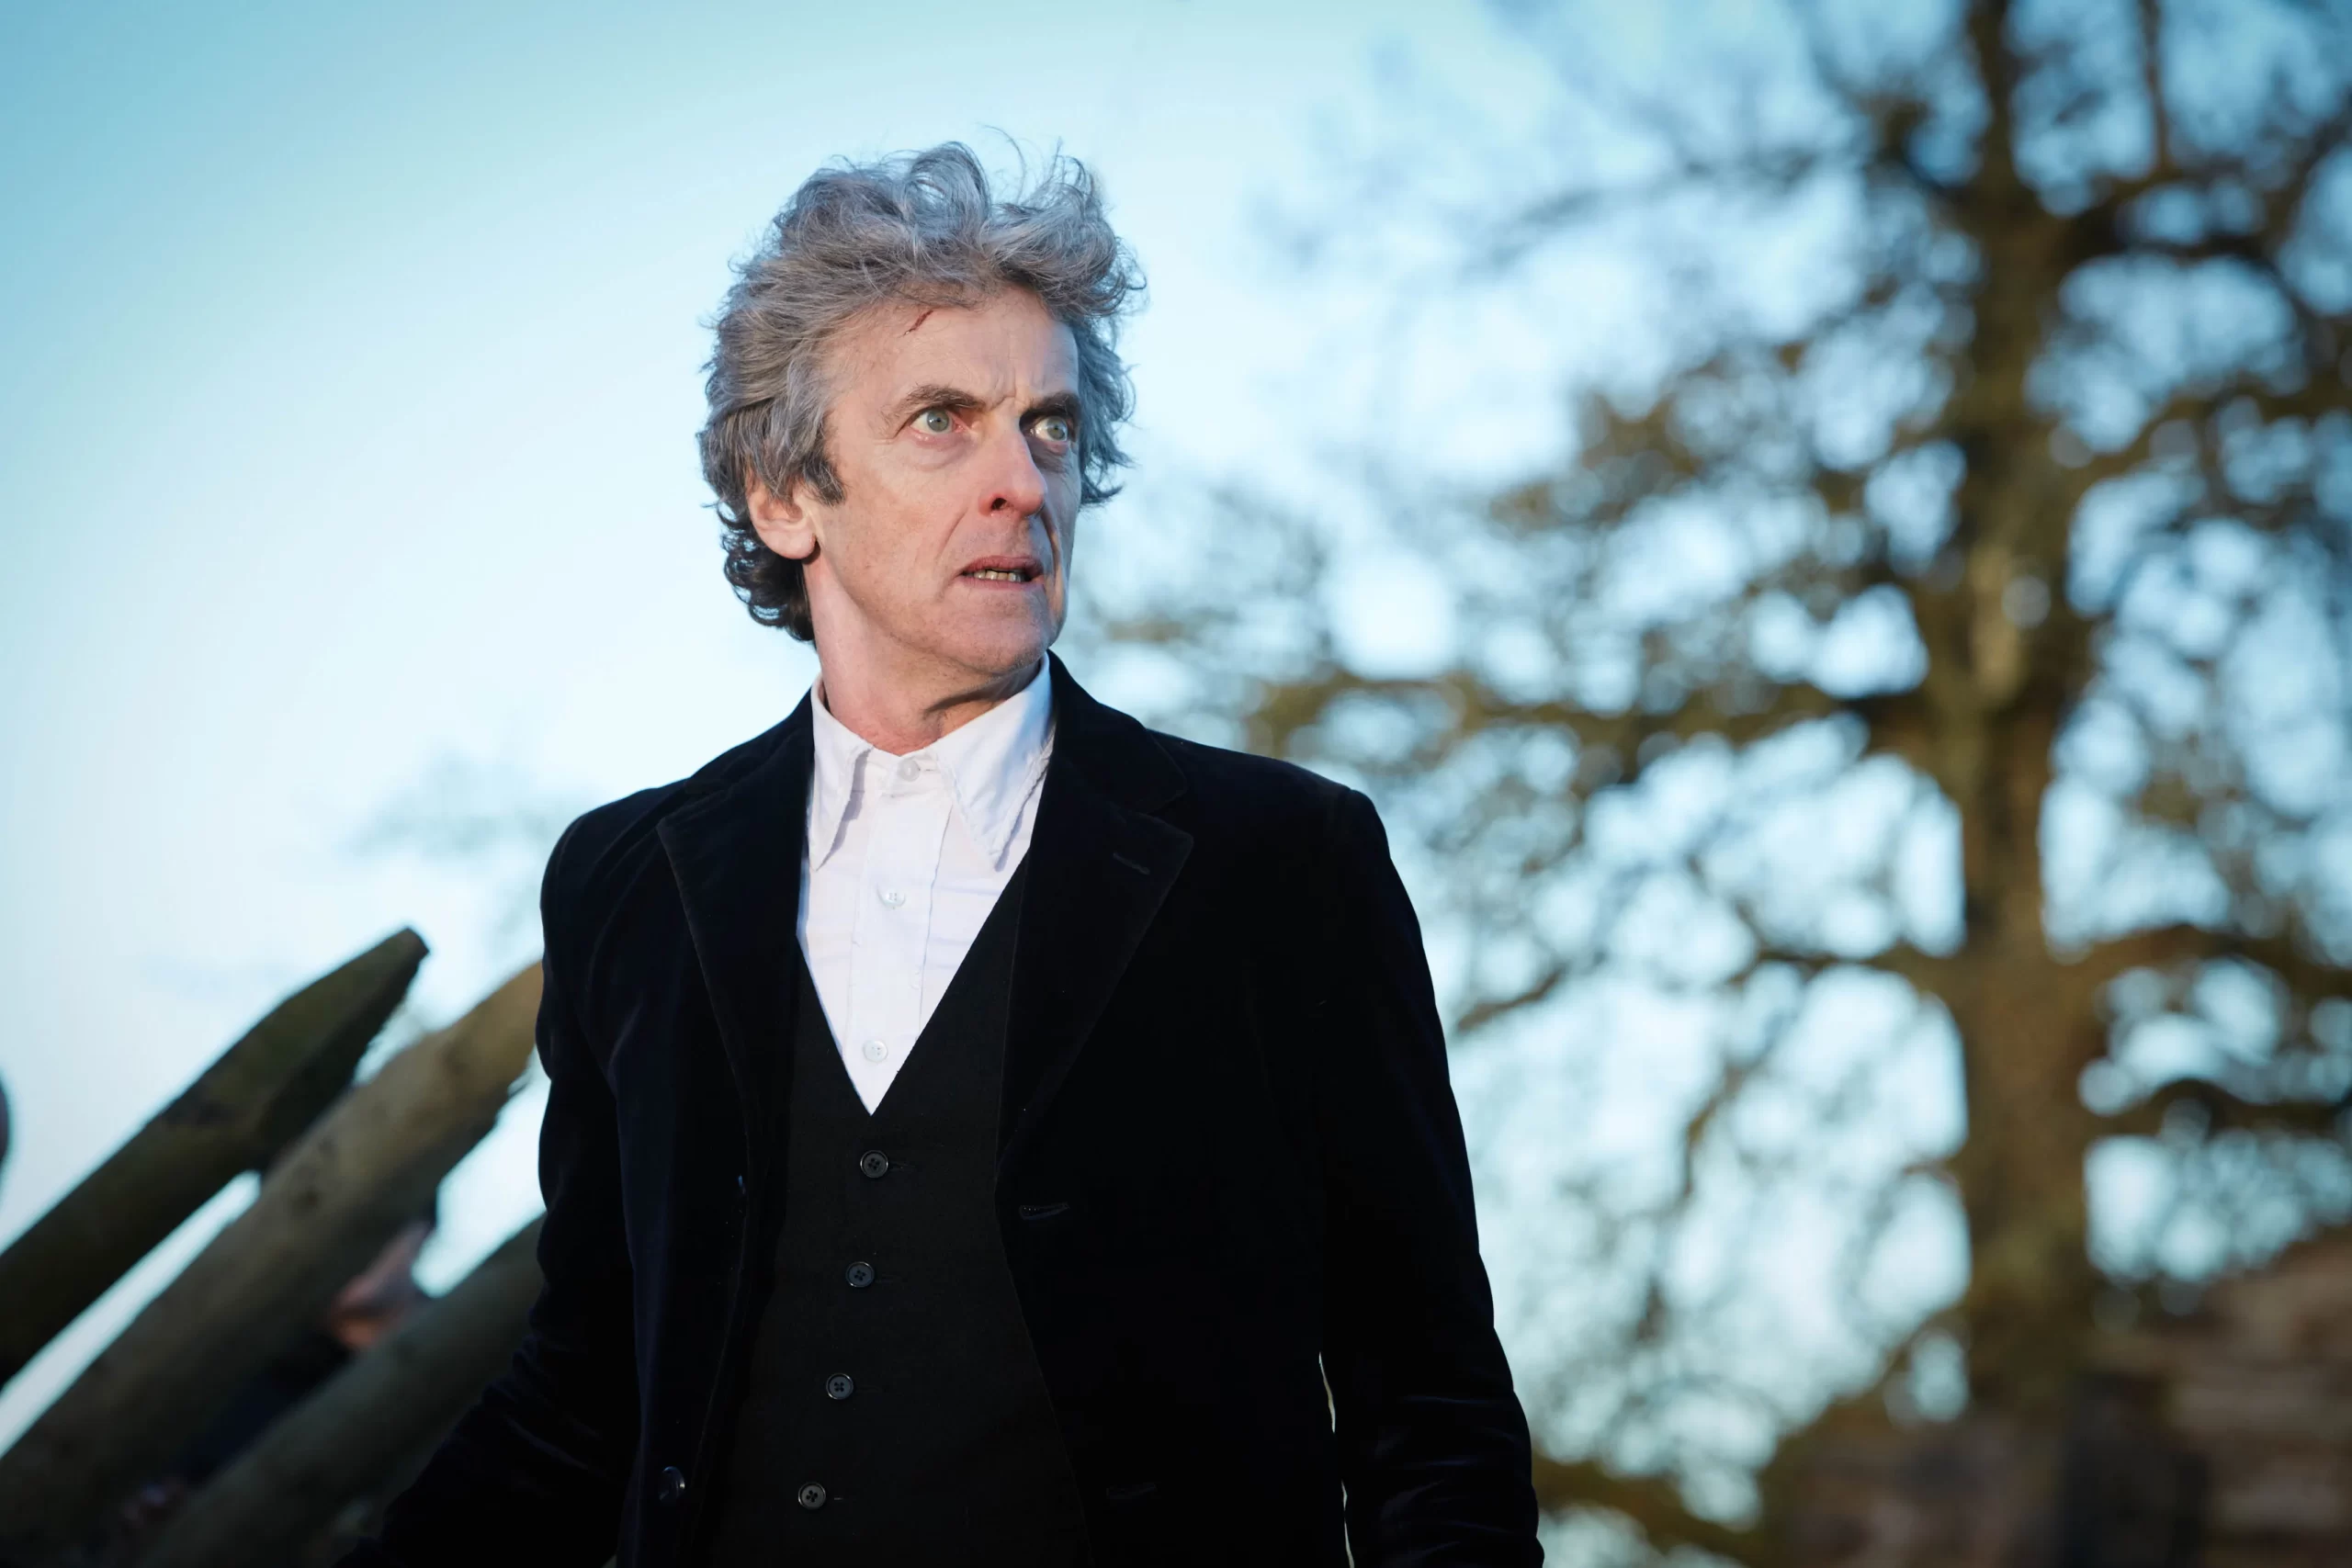 Peter Capaldi - The Twelfth Doctor (2014-2017)